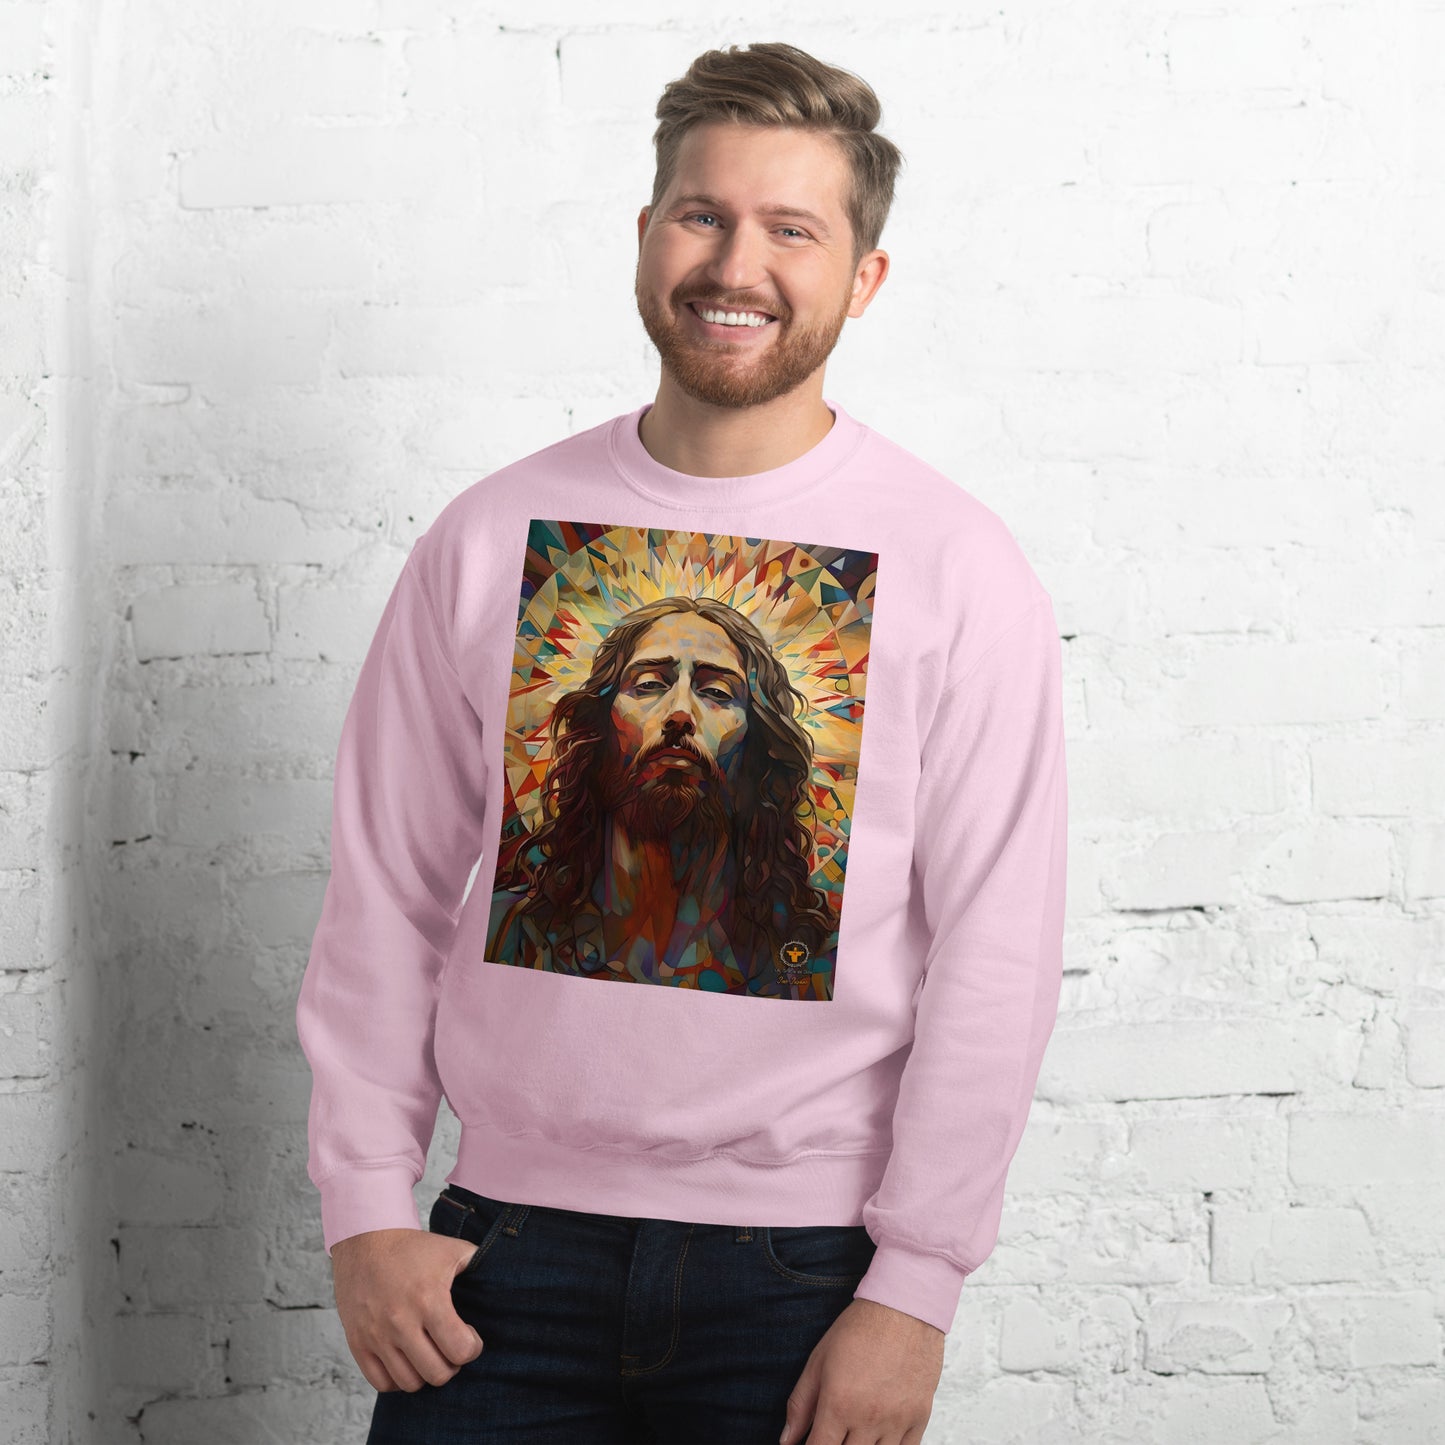 joven con sudadera rosa imagen del rostro de Jesus